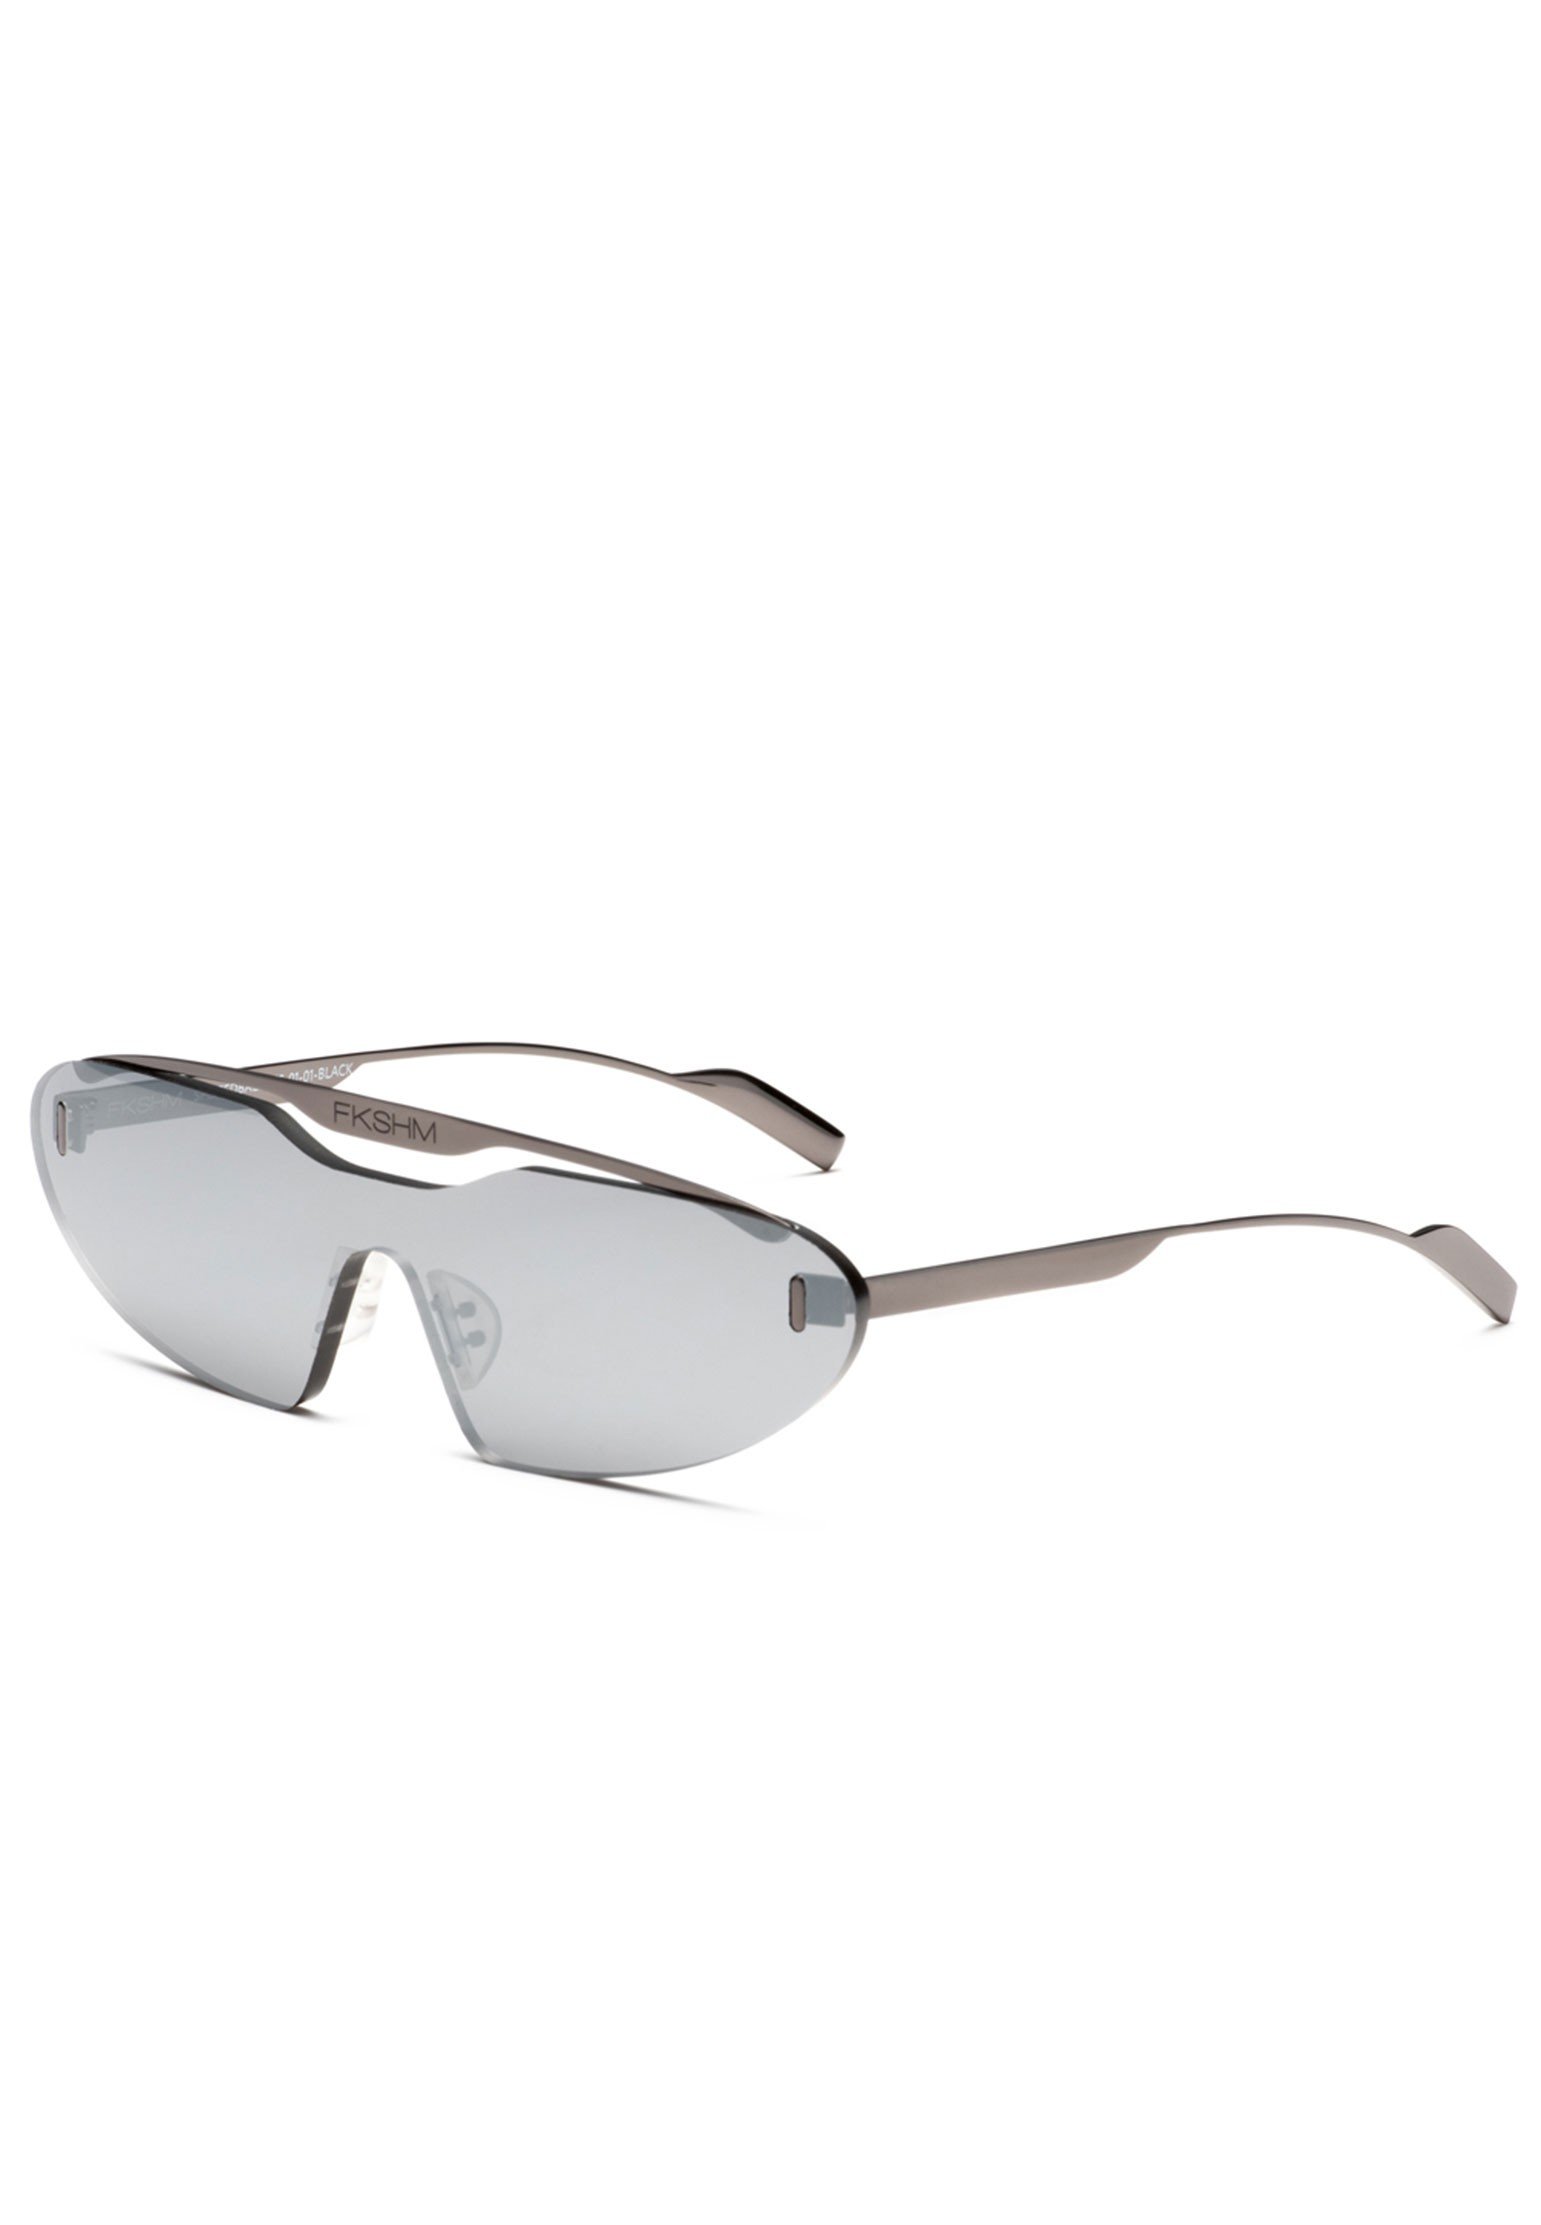 Sunglasses FAKOSHIMA Color: black (Code: 514) in online store Allure